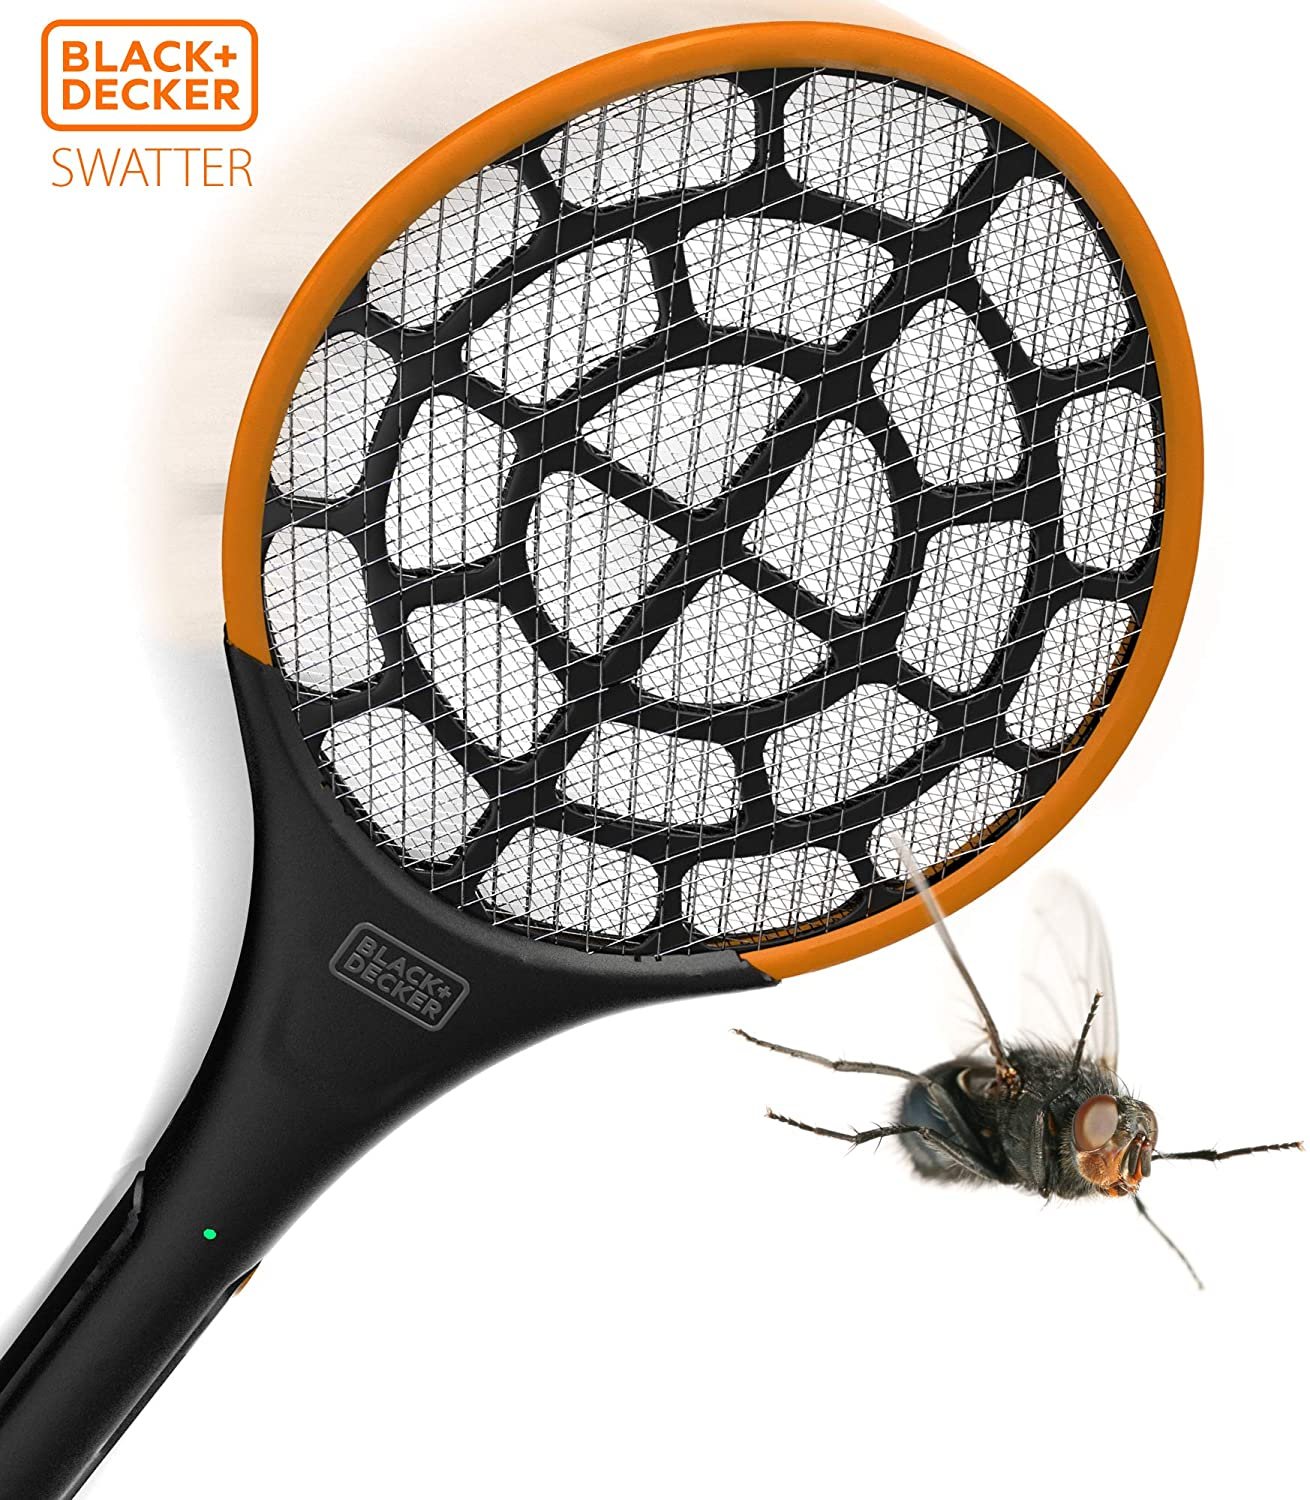 PRO 2.0 TWO PACK Black + Decker Electric Fly Swatter | Handheld Indoor Outdoor Bug Zapper